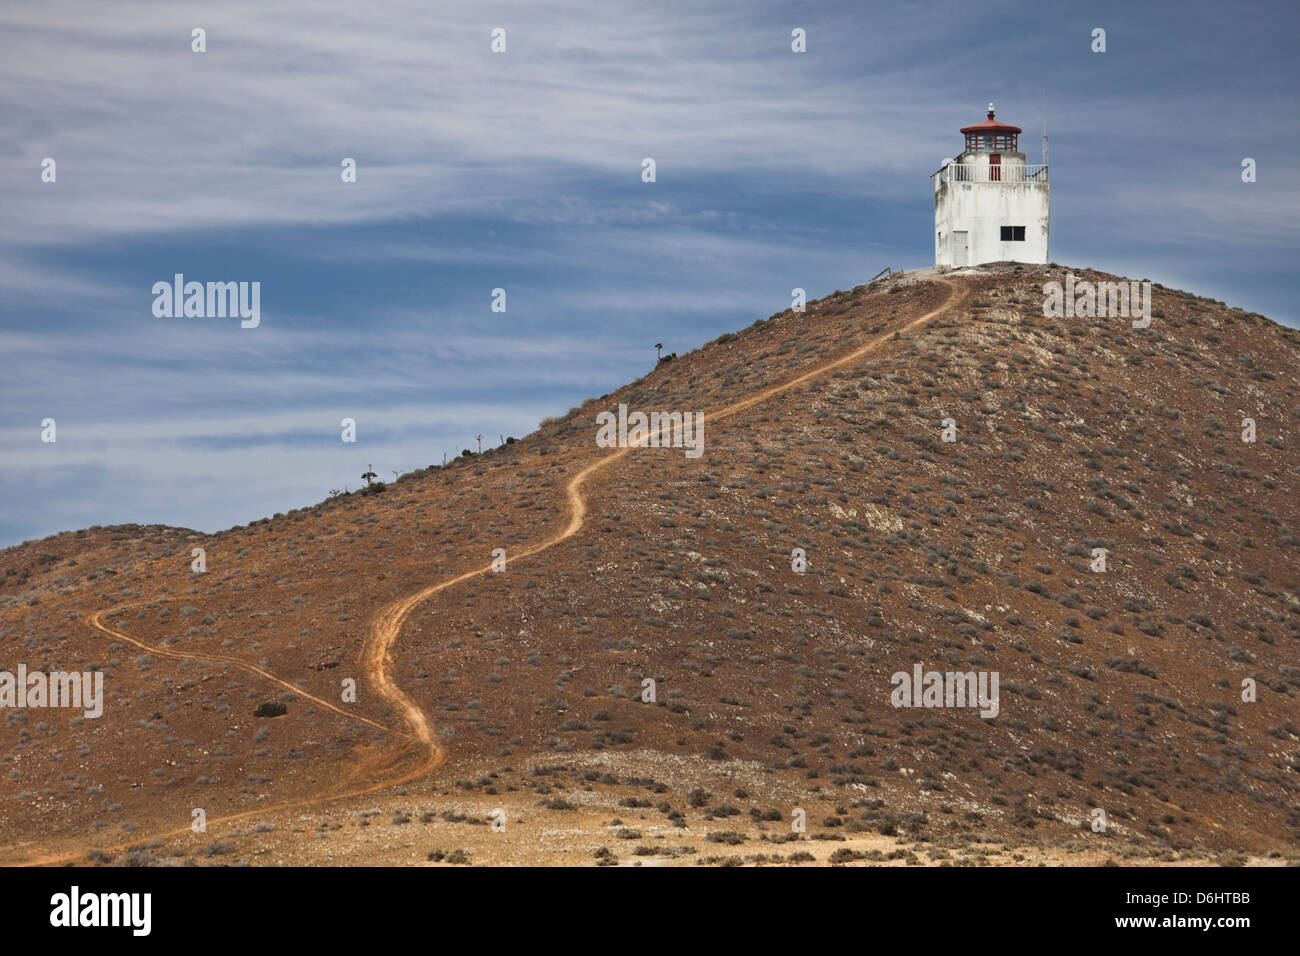 Un camino conduce hasta una colina al faro utilizados actualmente en la Isla San Benito Oeste, Norte de Baja California, México Foto de stock